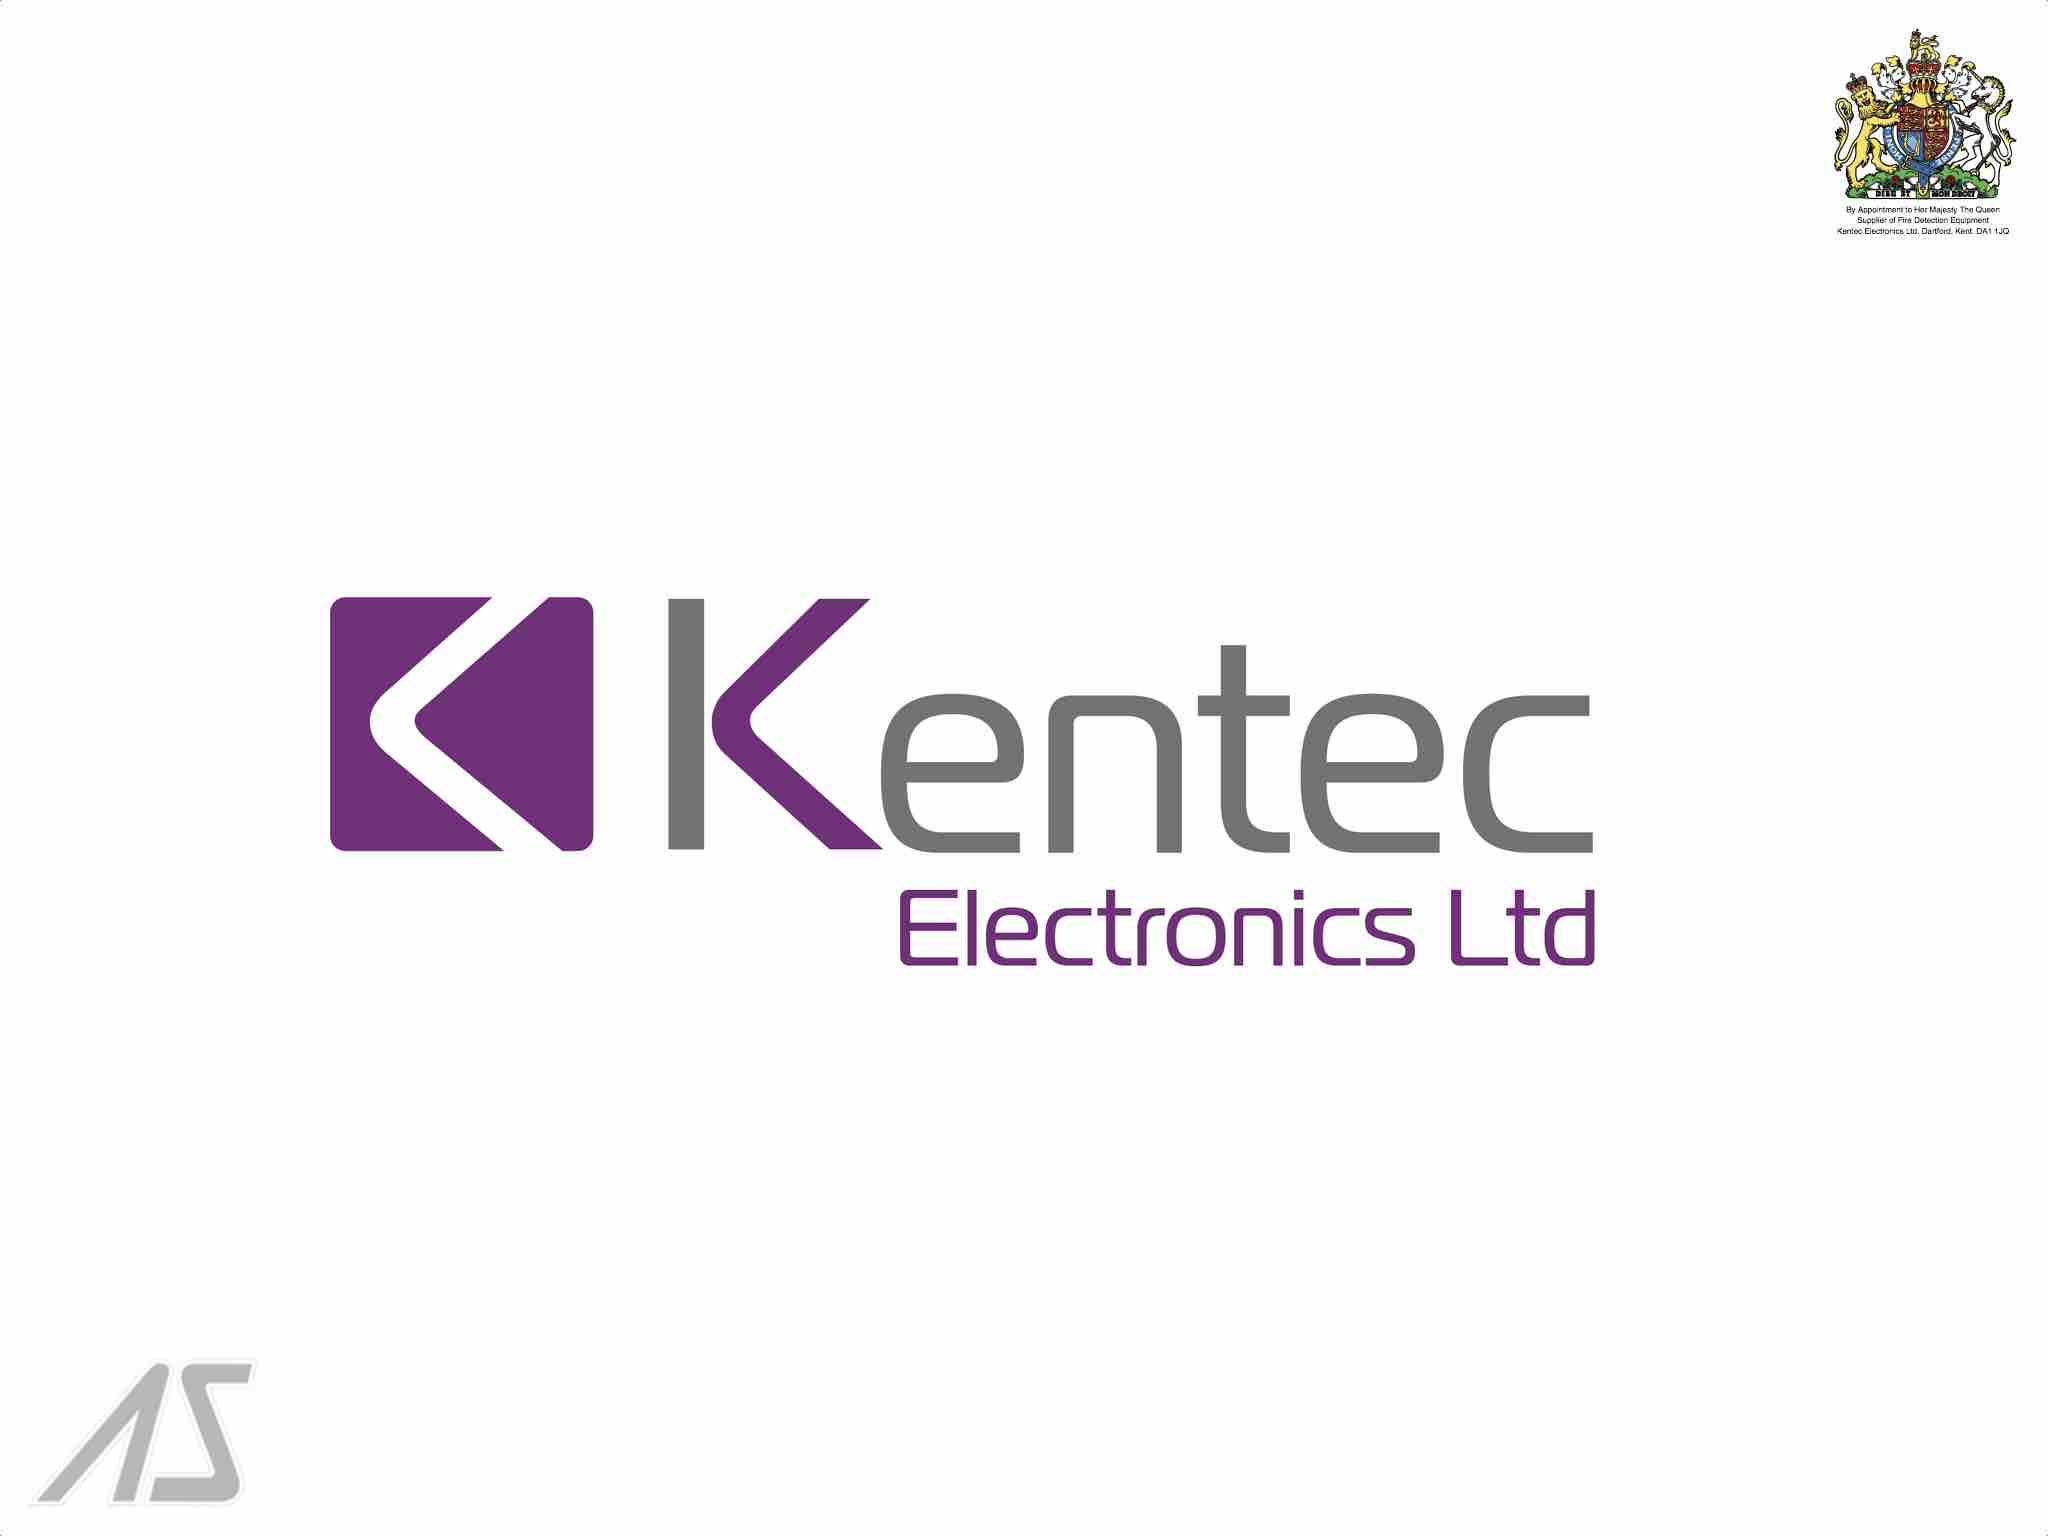 Electronics limited. KENTEC. KENTEC logo. Sigma XT+ KENTEC. Кентек лого.